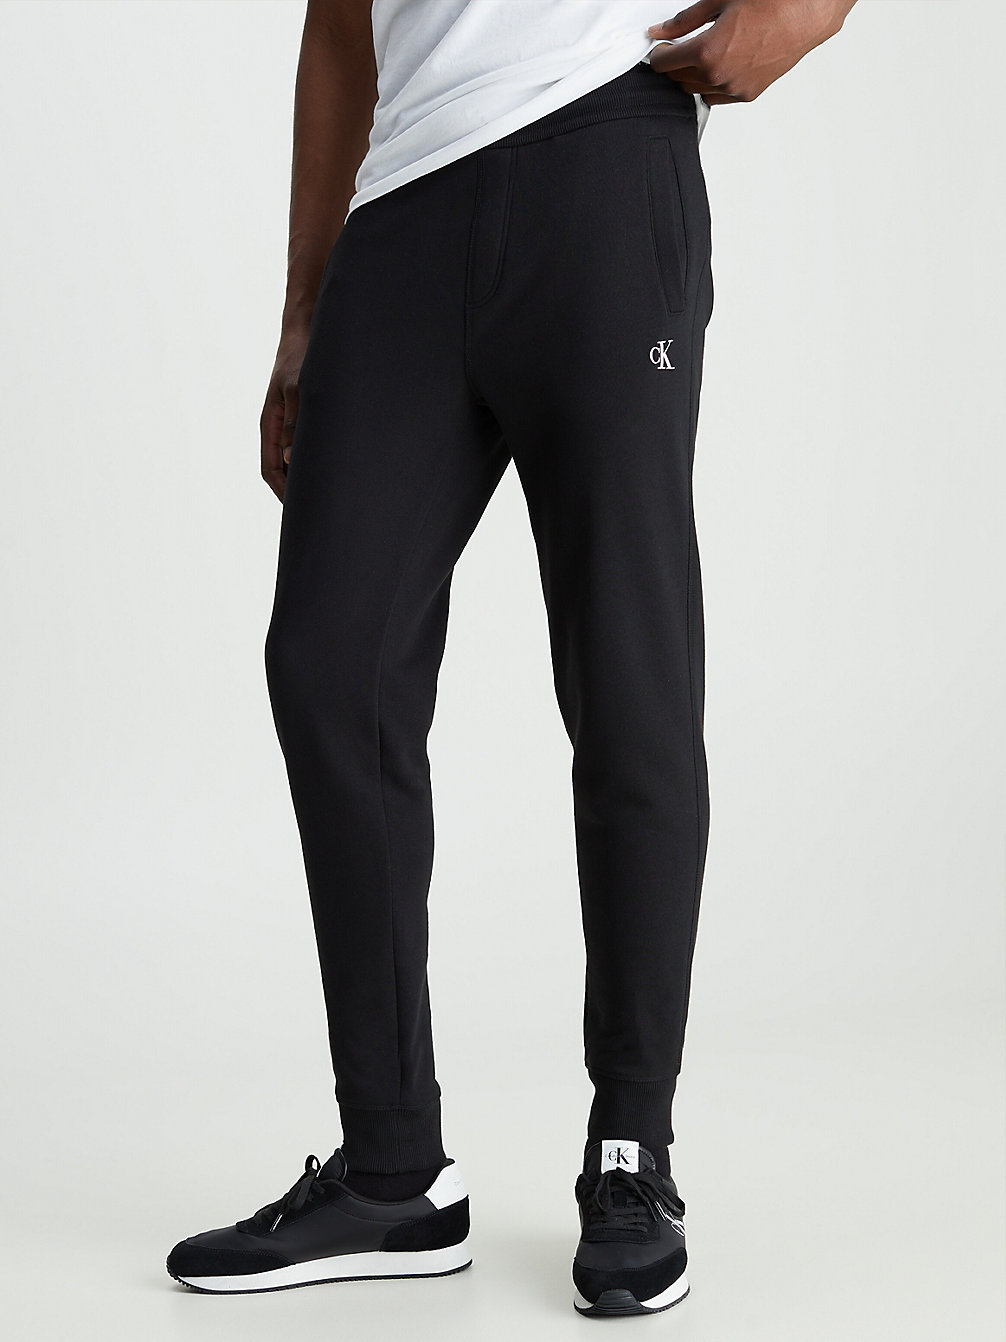 CK BLACK Pantalon De Jogging Avec Monogramme undefined hommes Calvin Klein